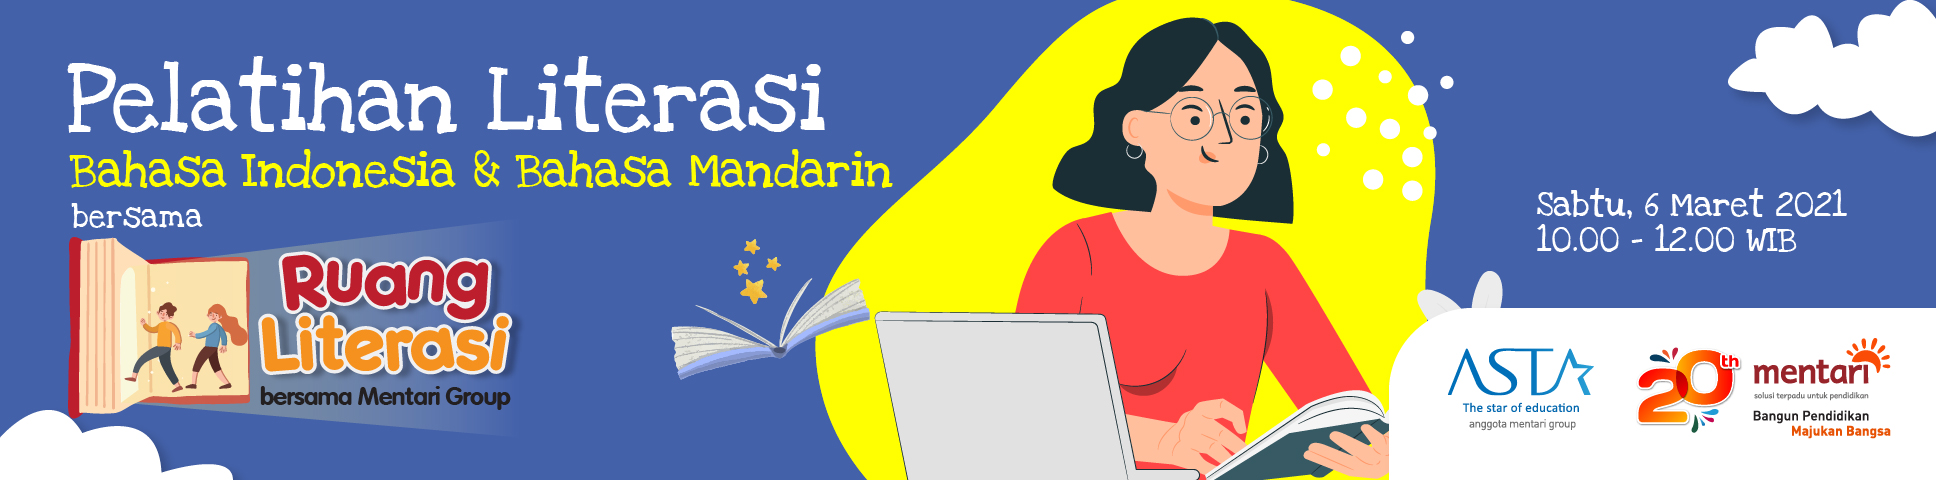 Pelatihan Literasi Bahasa Indonesia dan Bahasa Mandarin bersama Ruang Literasi